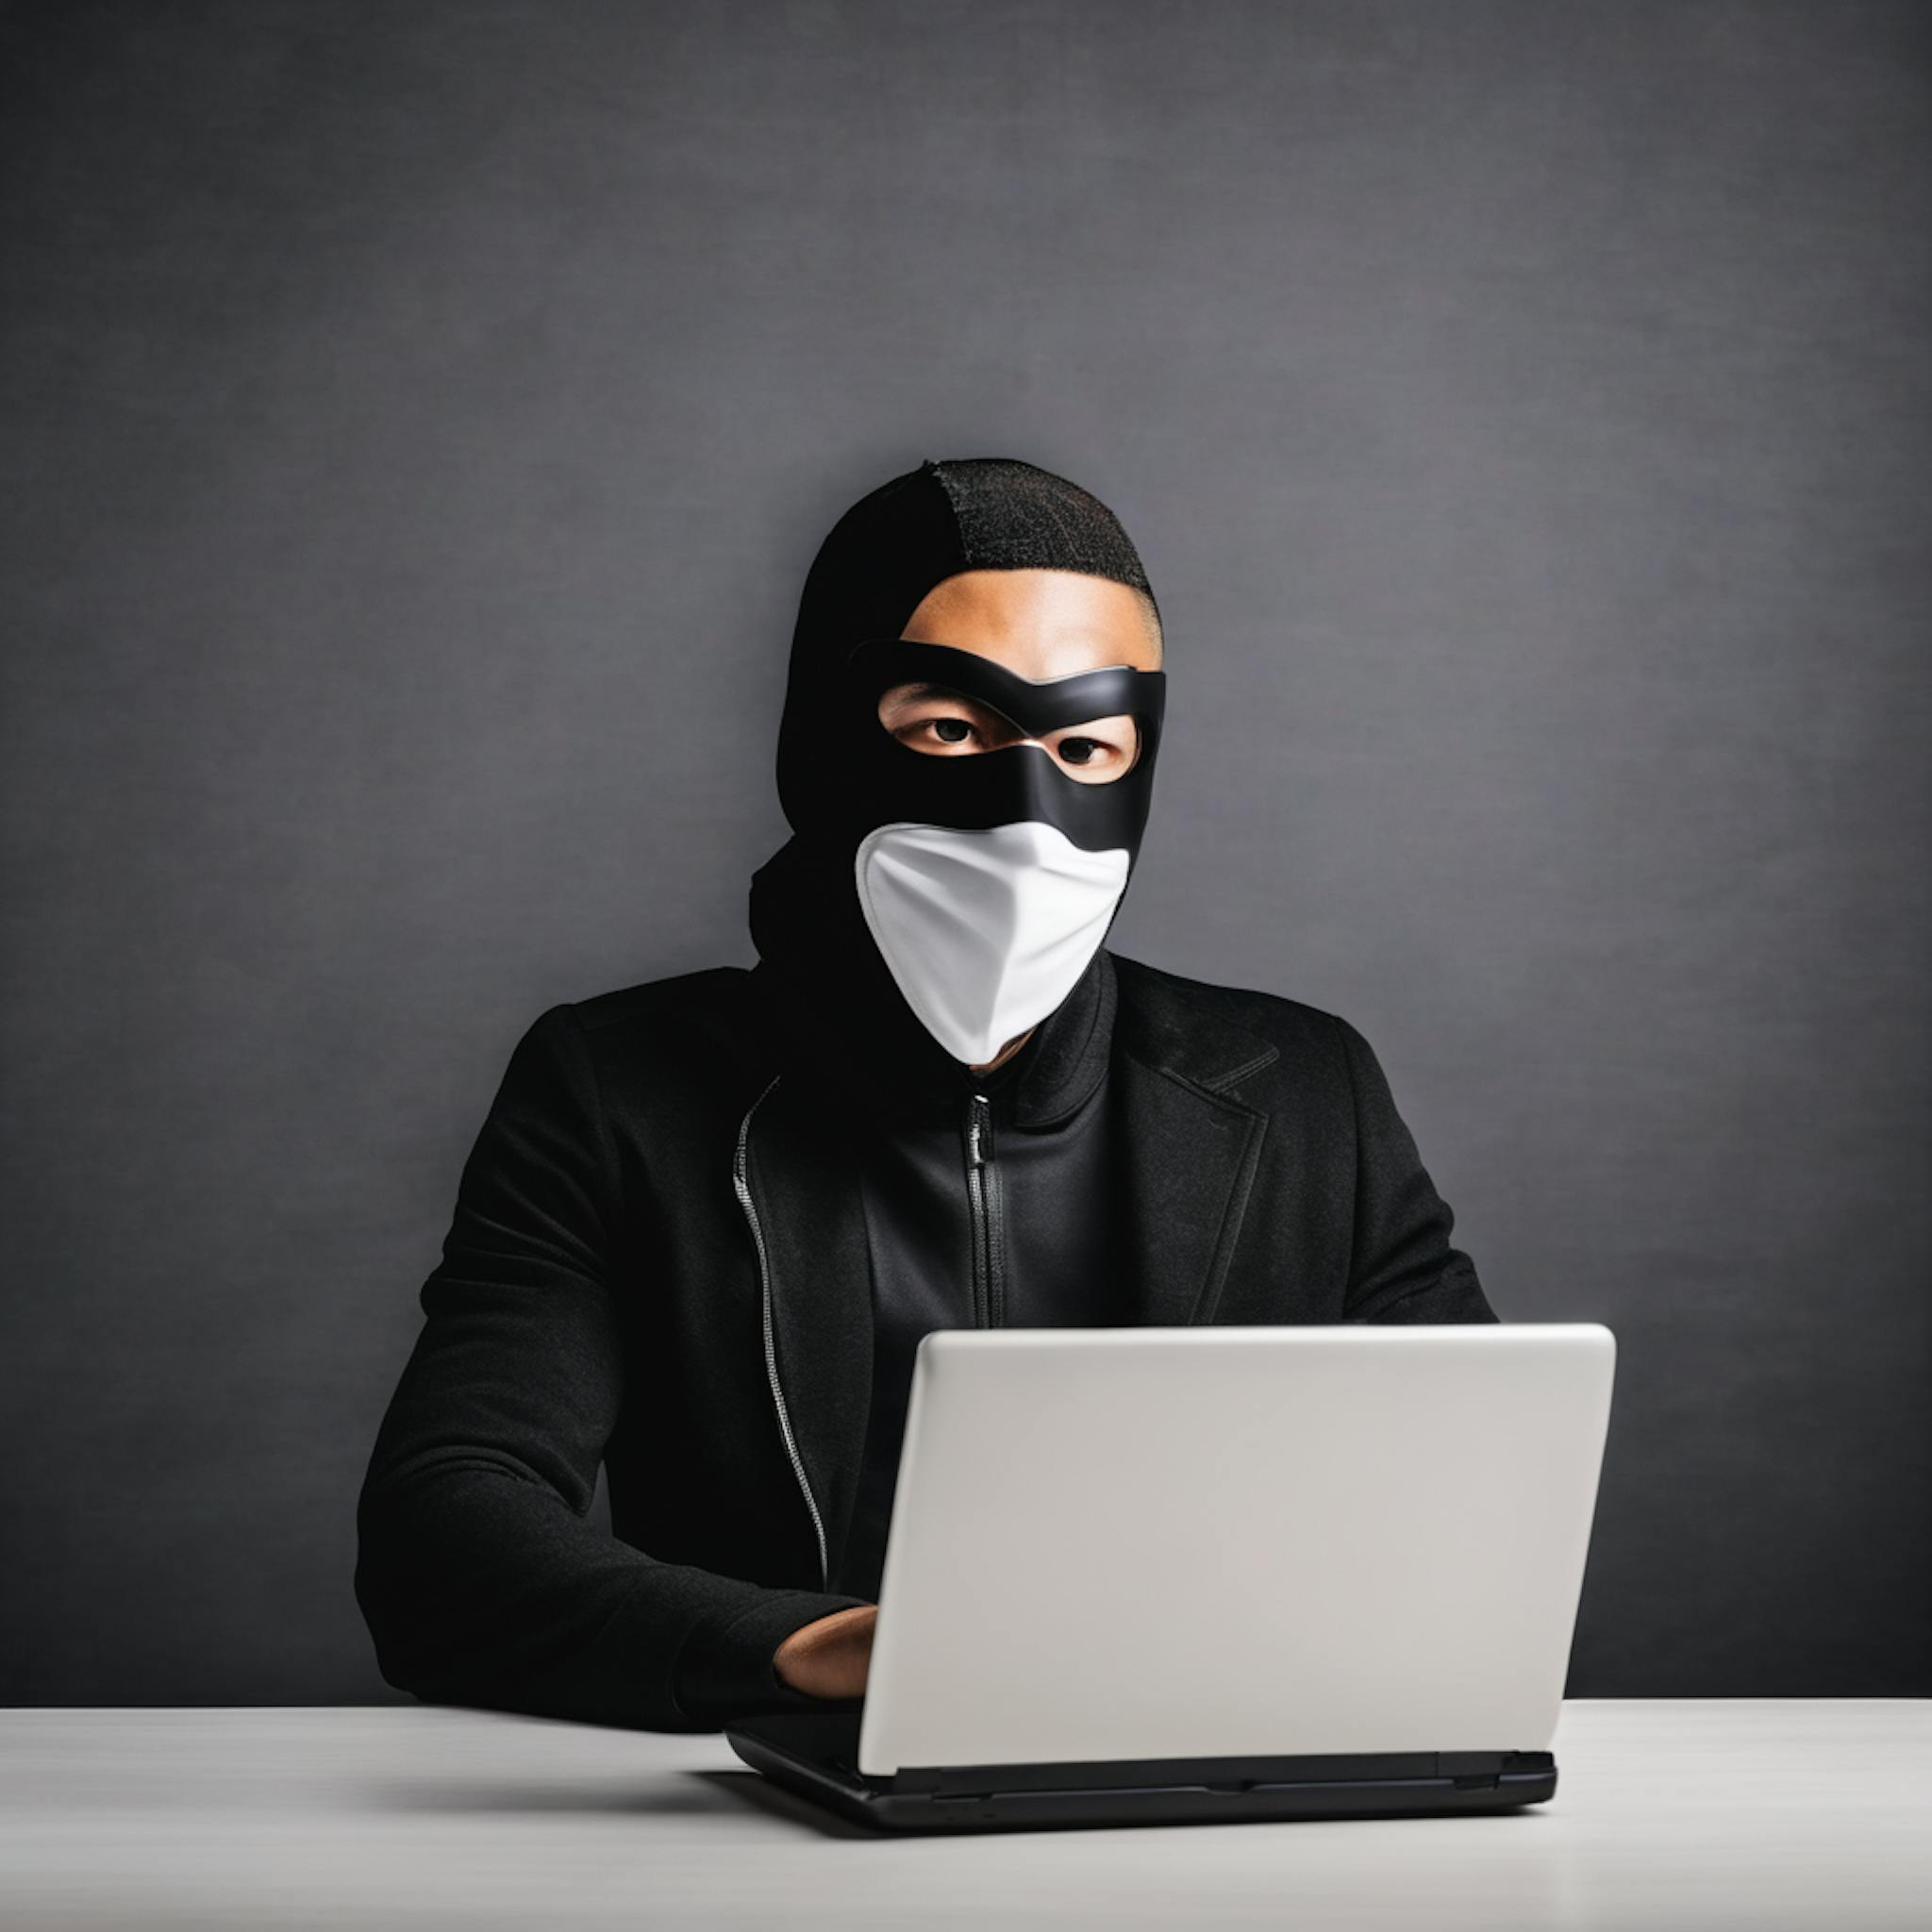 featured image - Büyüyen Siber Tehdit Ortamı: Devlet Destekli ve Kriminal Siber Faaliyetlere İlişkin Bilgiler